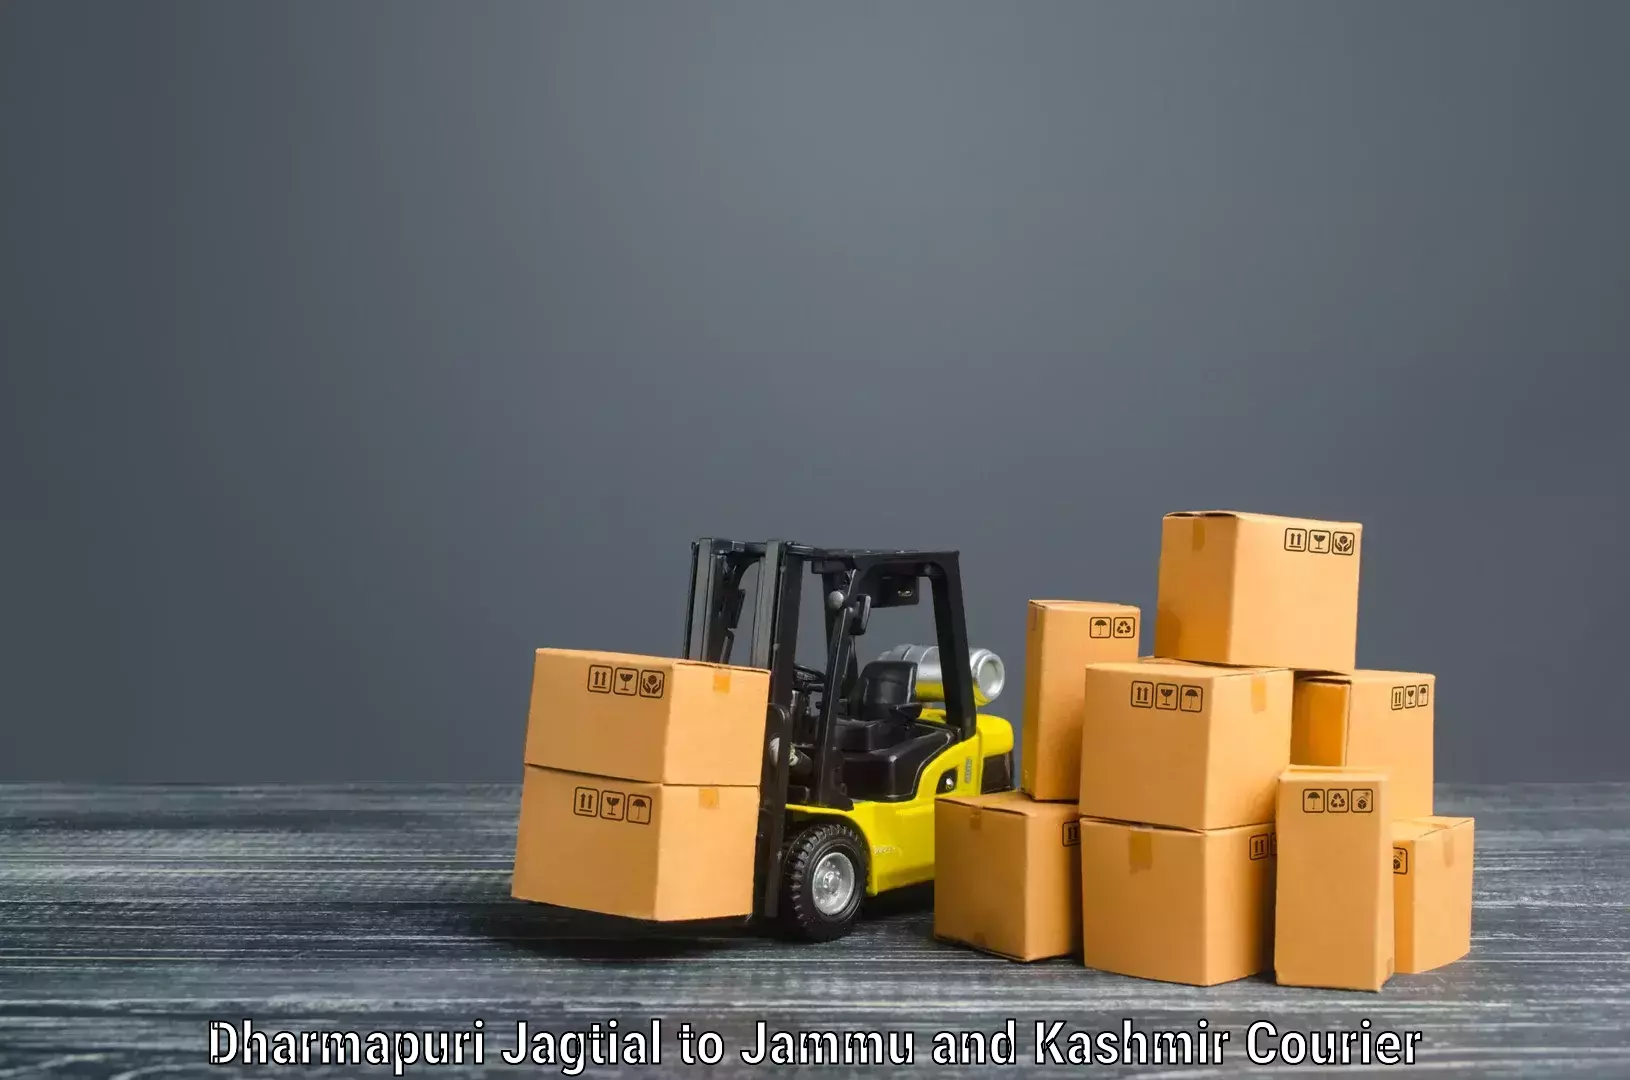 Furniture delivery service Dharmapuri Jagtial to IIT Jammu